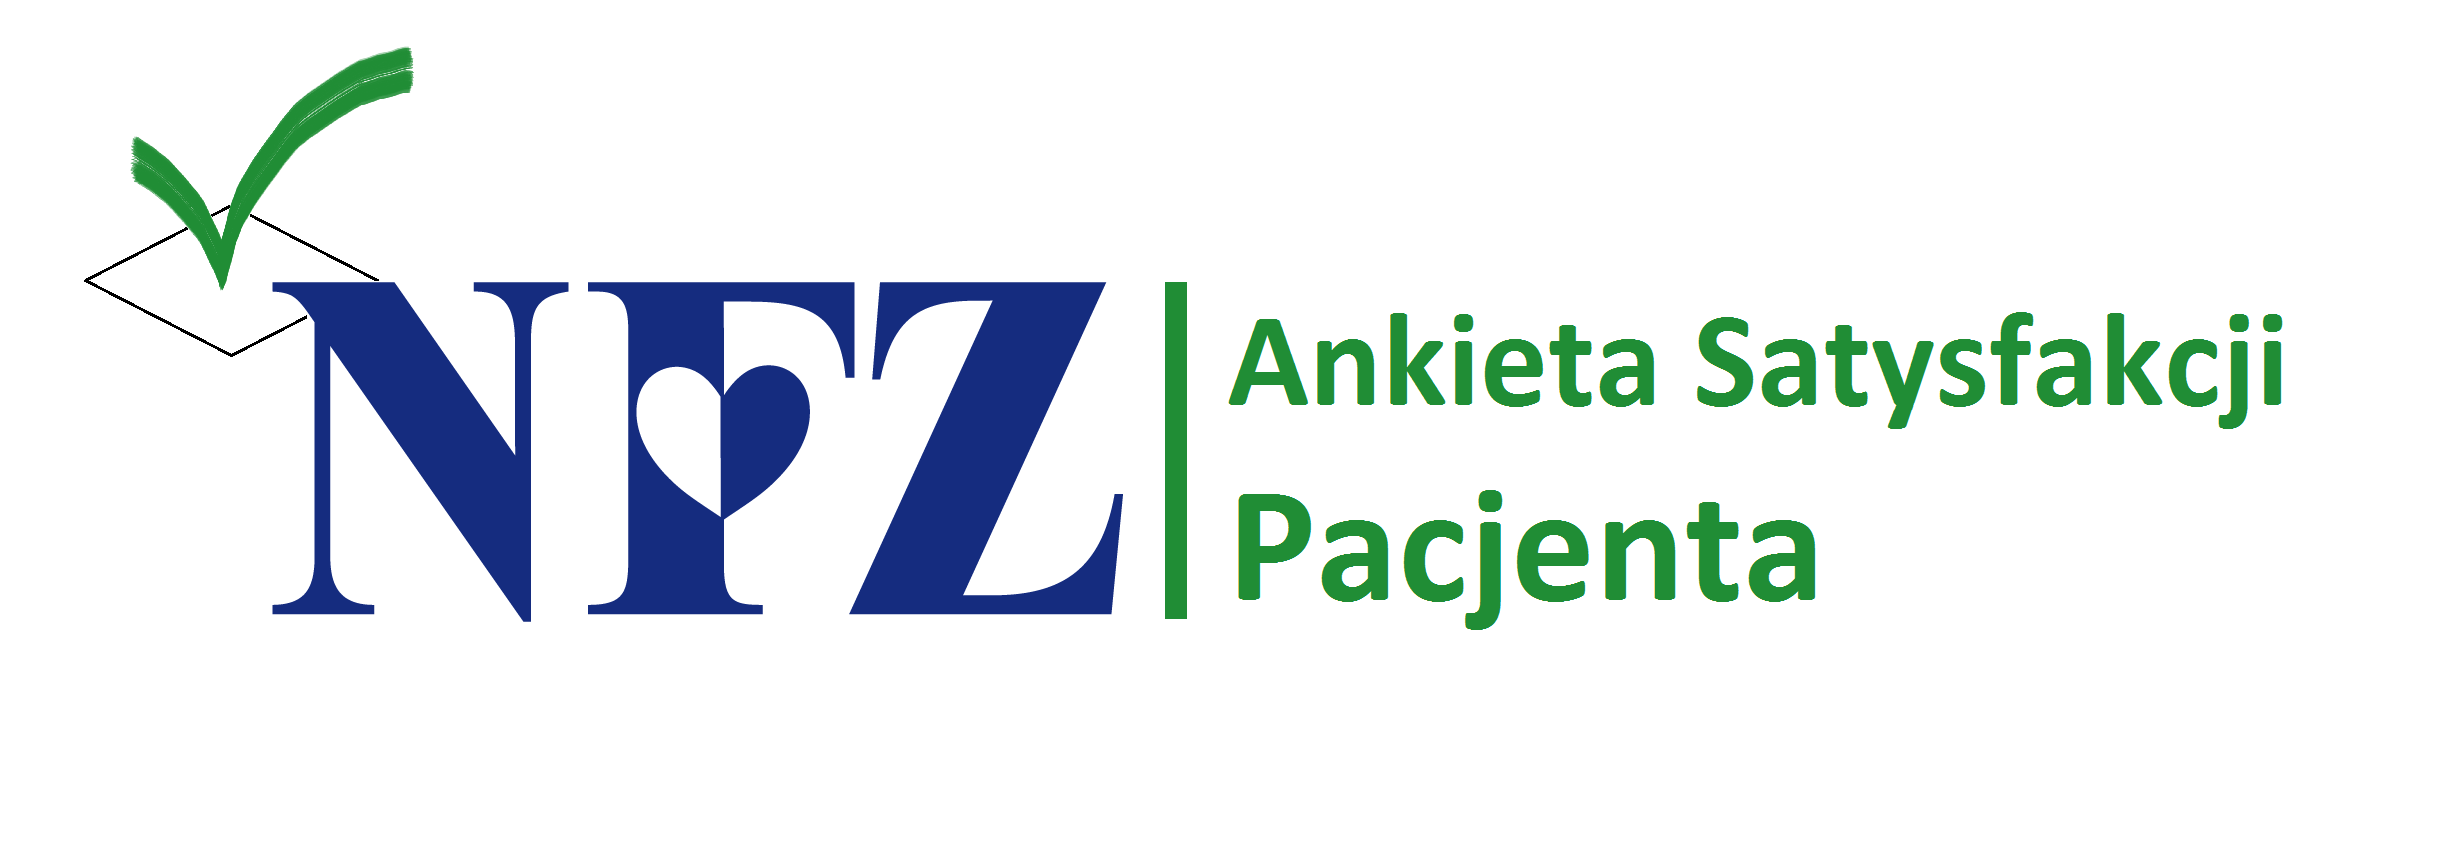 https://m.powiatszczycienski.pl/2015/11/orig/nowe-logo-ankieta-poz-2369.png